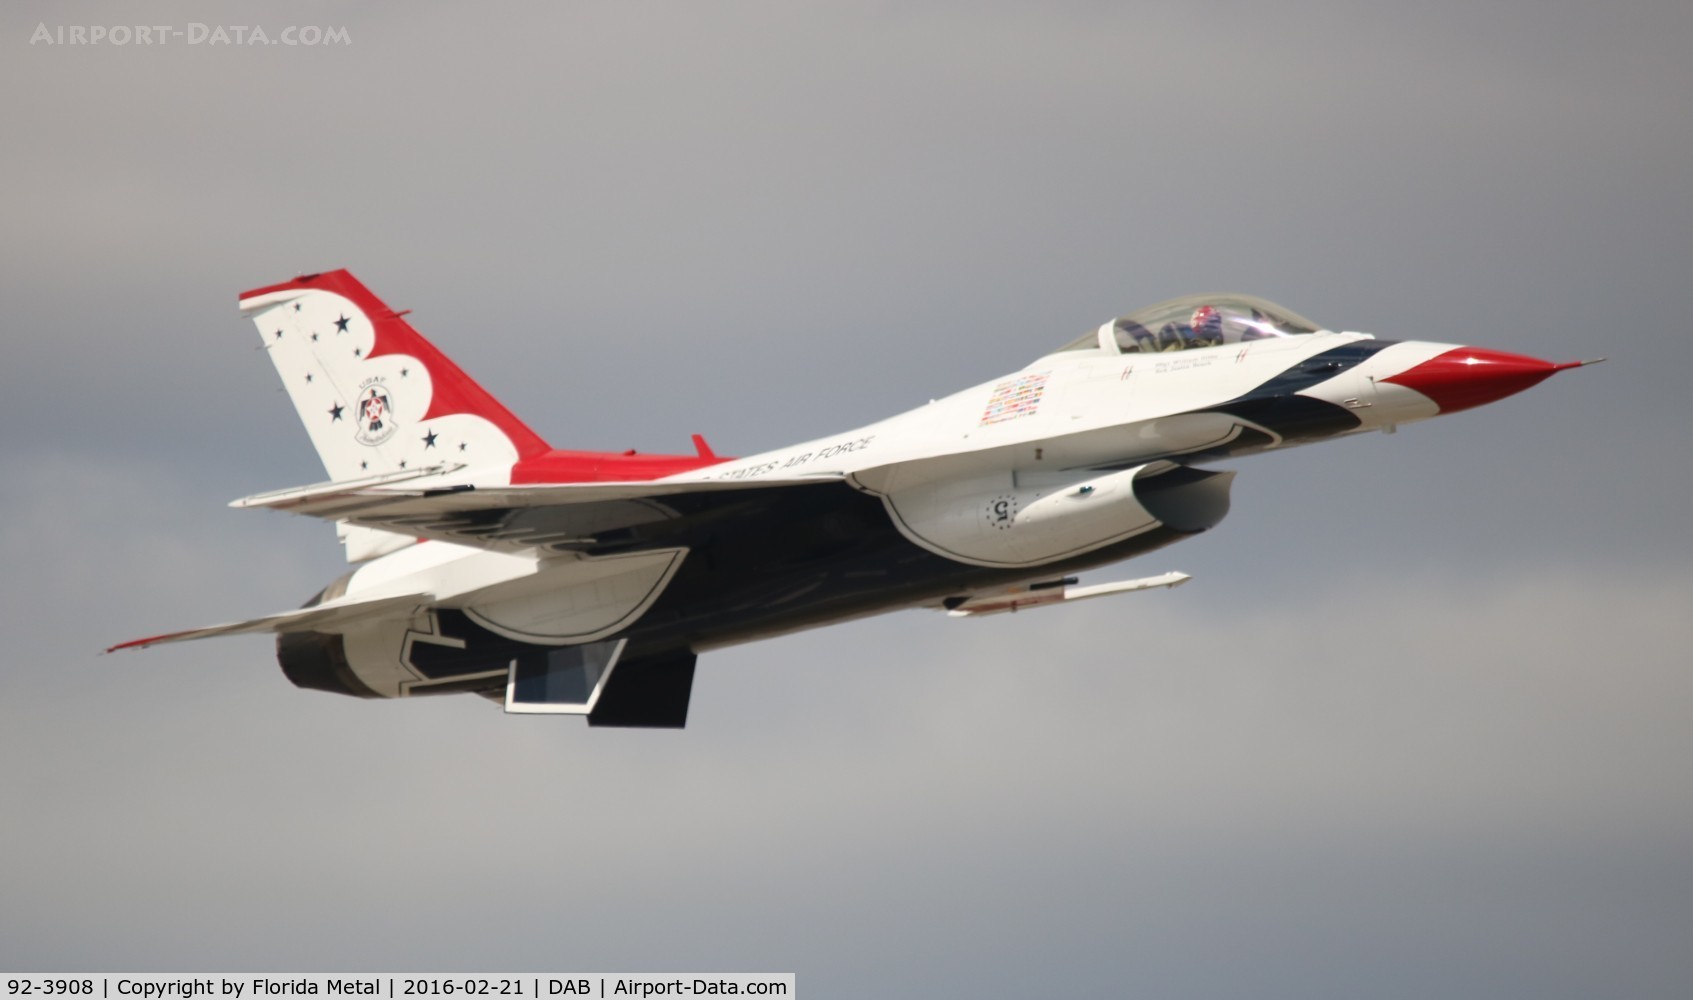 92-3908, 1992 General Dynamics F-16CM Fighting Falcon C/N CC-150, Thunderbirds